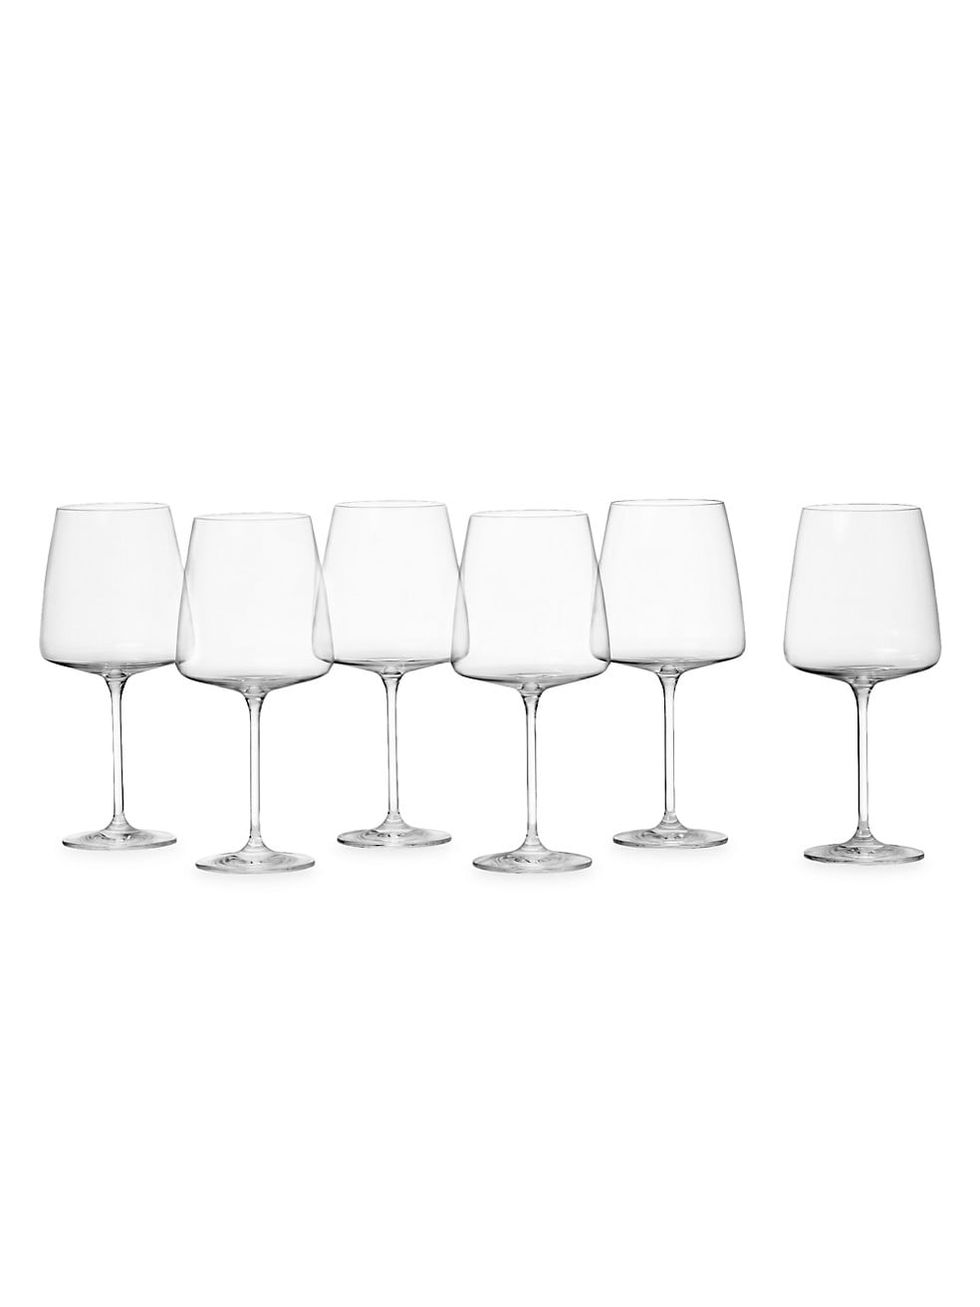 Sensa Schott Zwiesel 6-Piece Burgundy Glass Set